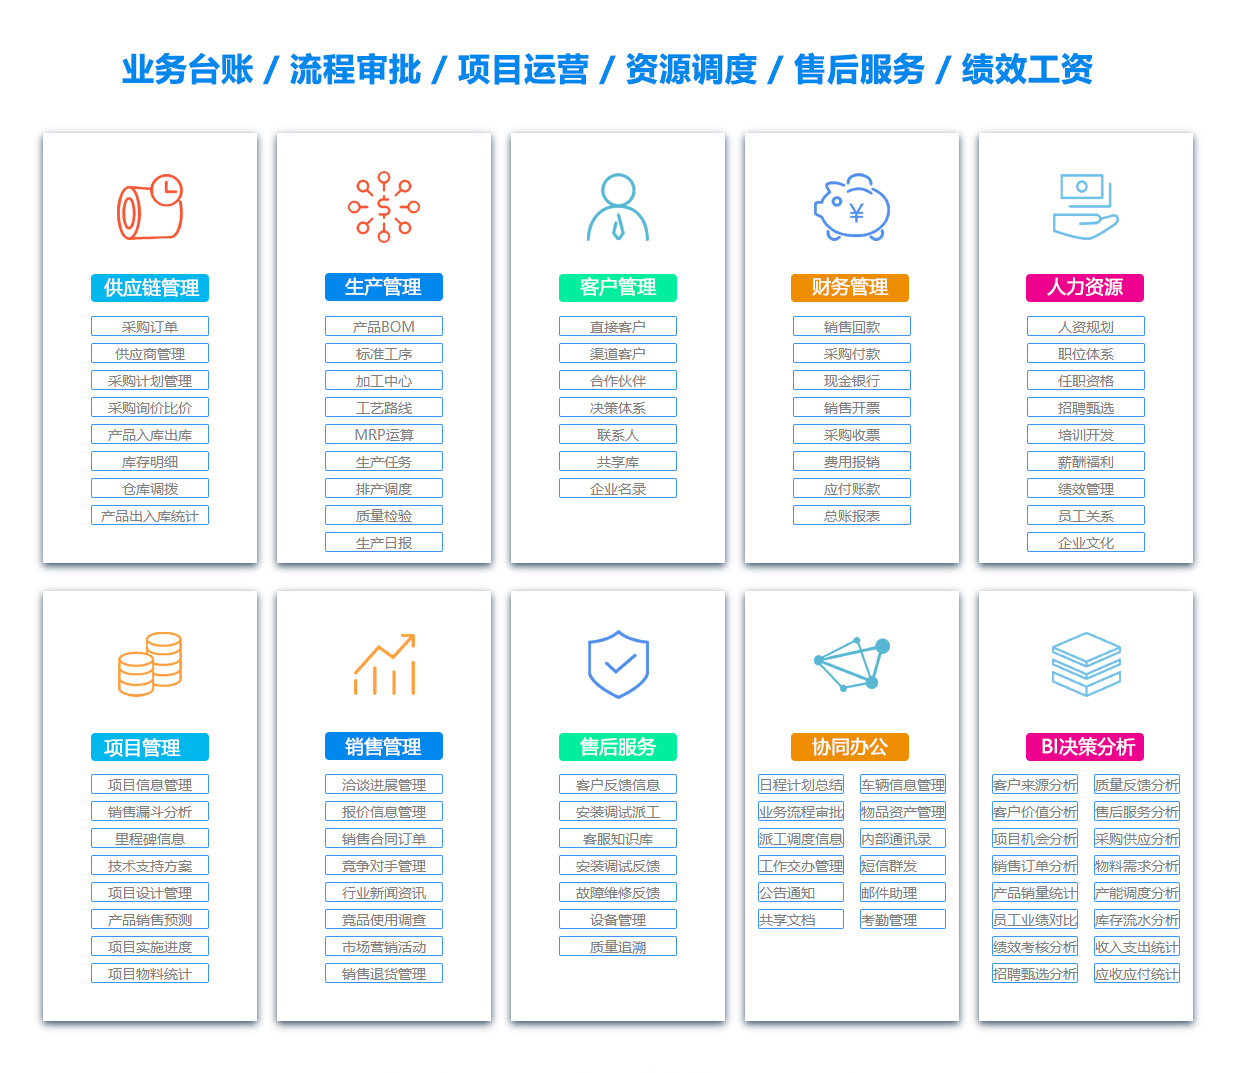 大庆SCM:供应链管理系统